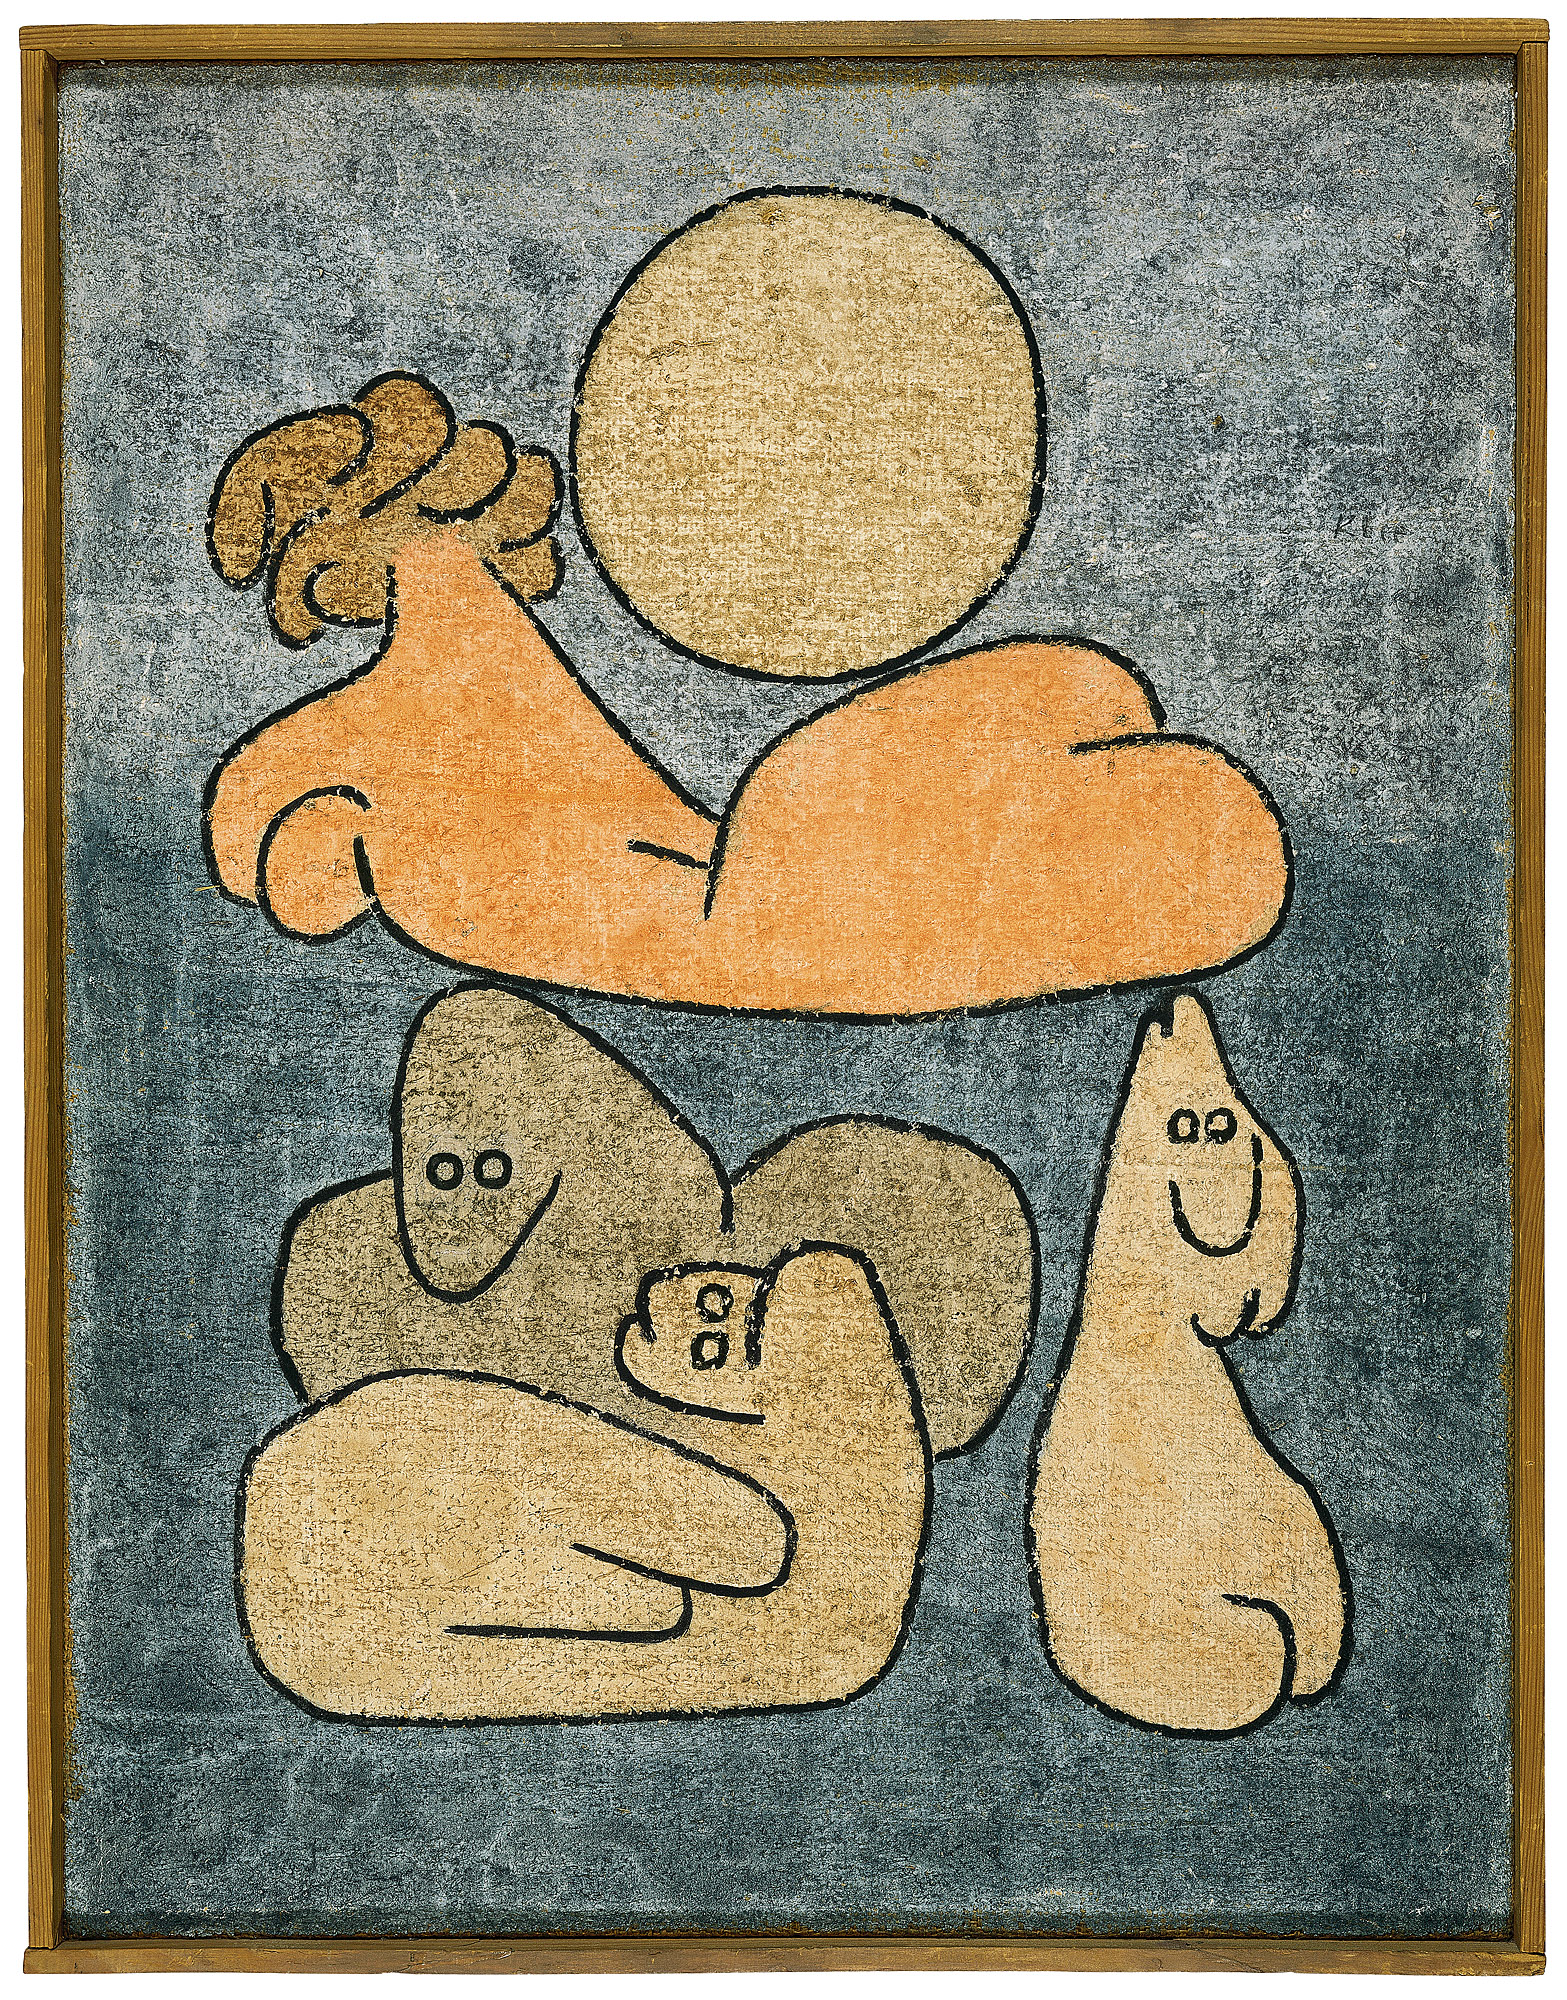 (보름달의) 토르소와 일족 by Paul Klee - 1939 - 65 x 50 cm 